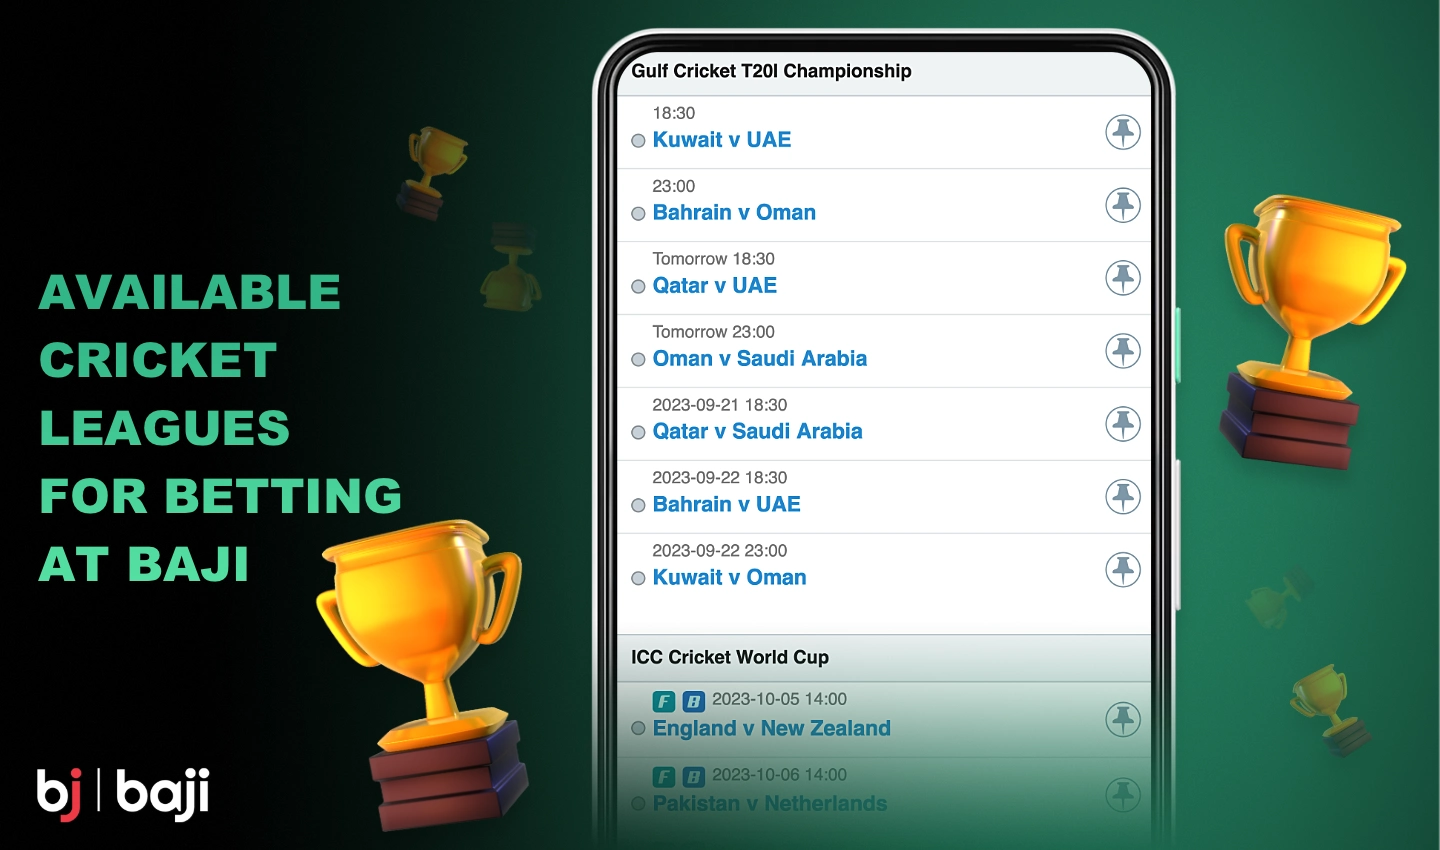 Baji पर, उपयोगकर्ता लोकप्रिय चैंपियनशिप के साथ-साथ स्थानीय टूर्नामेंट पर भी दांव लगा सकते हैं